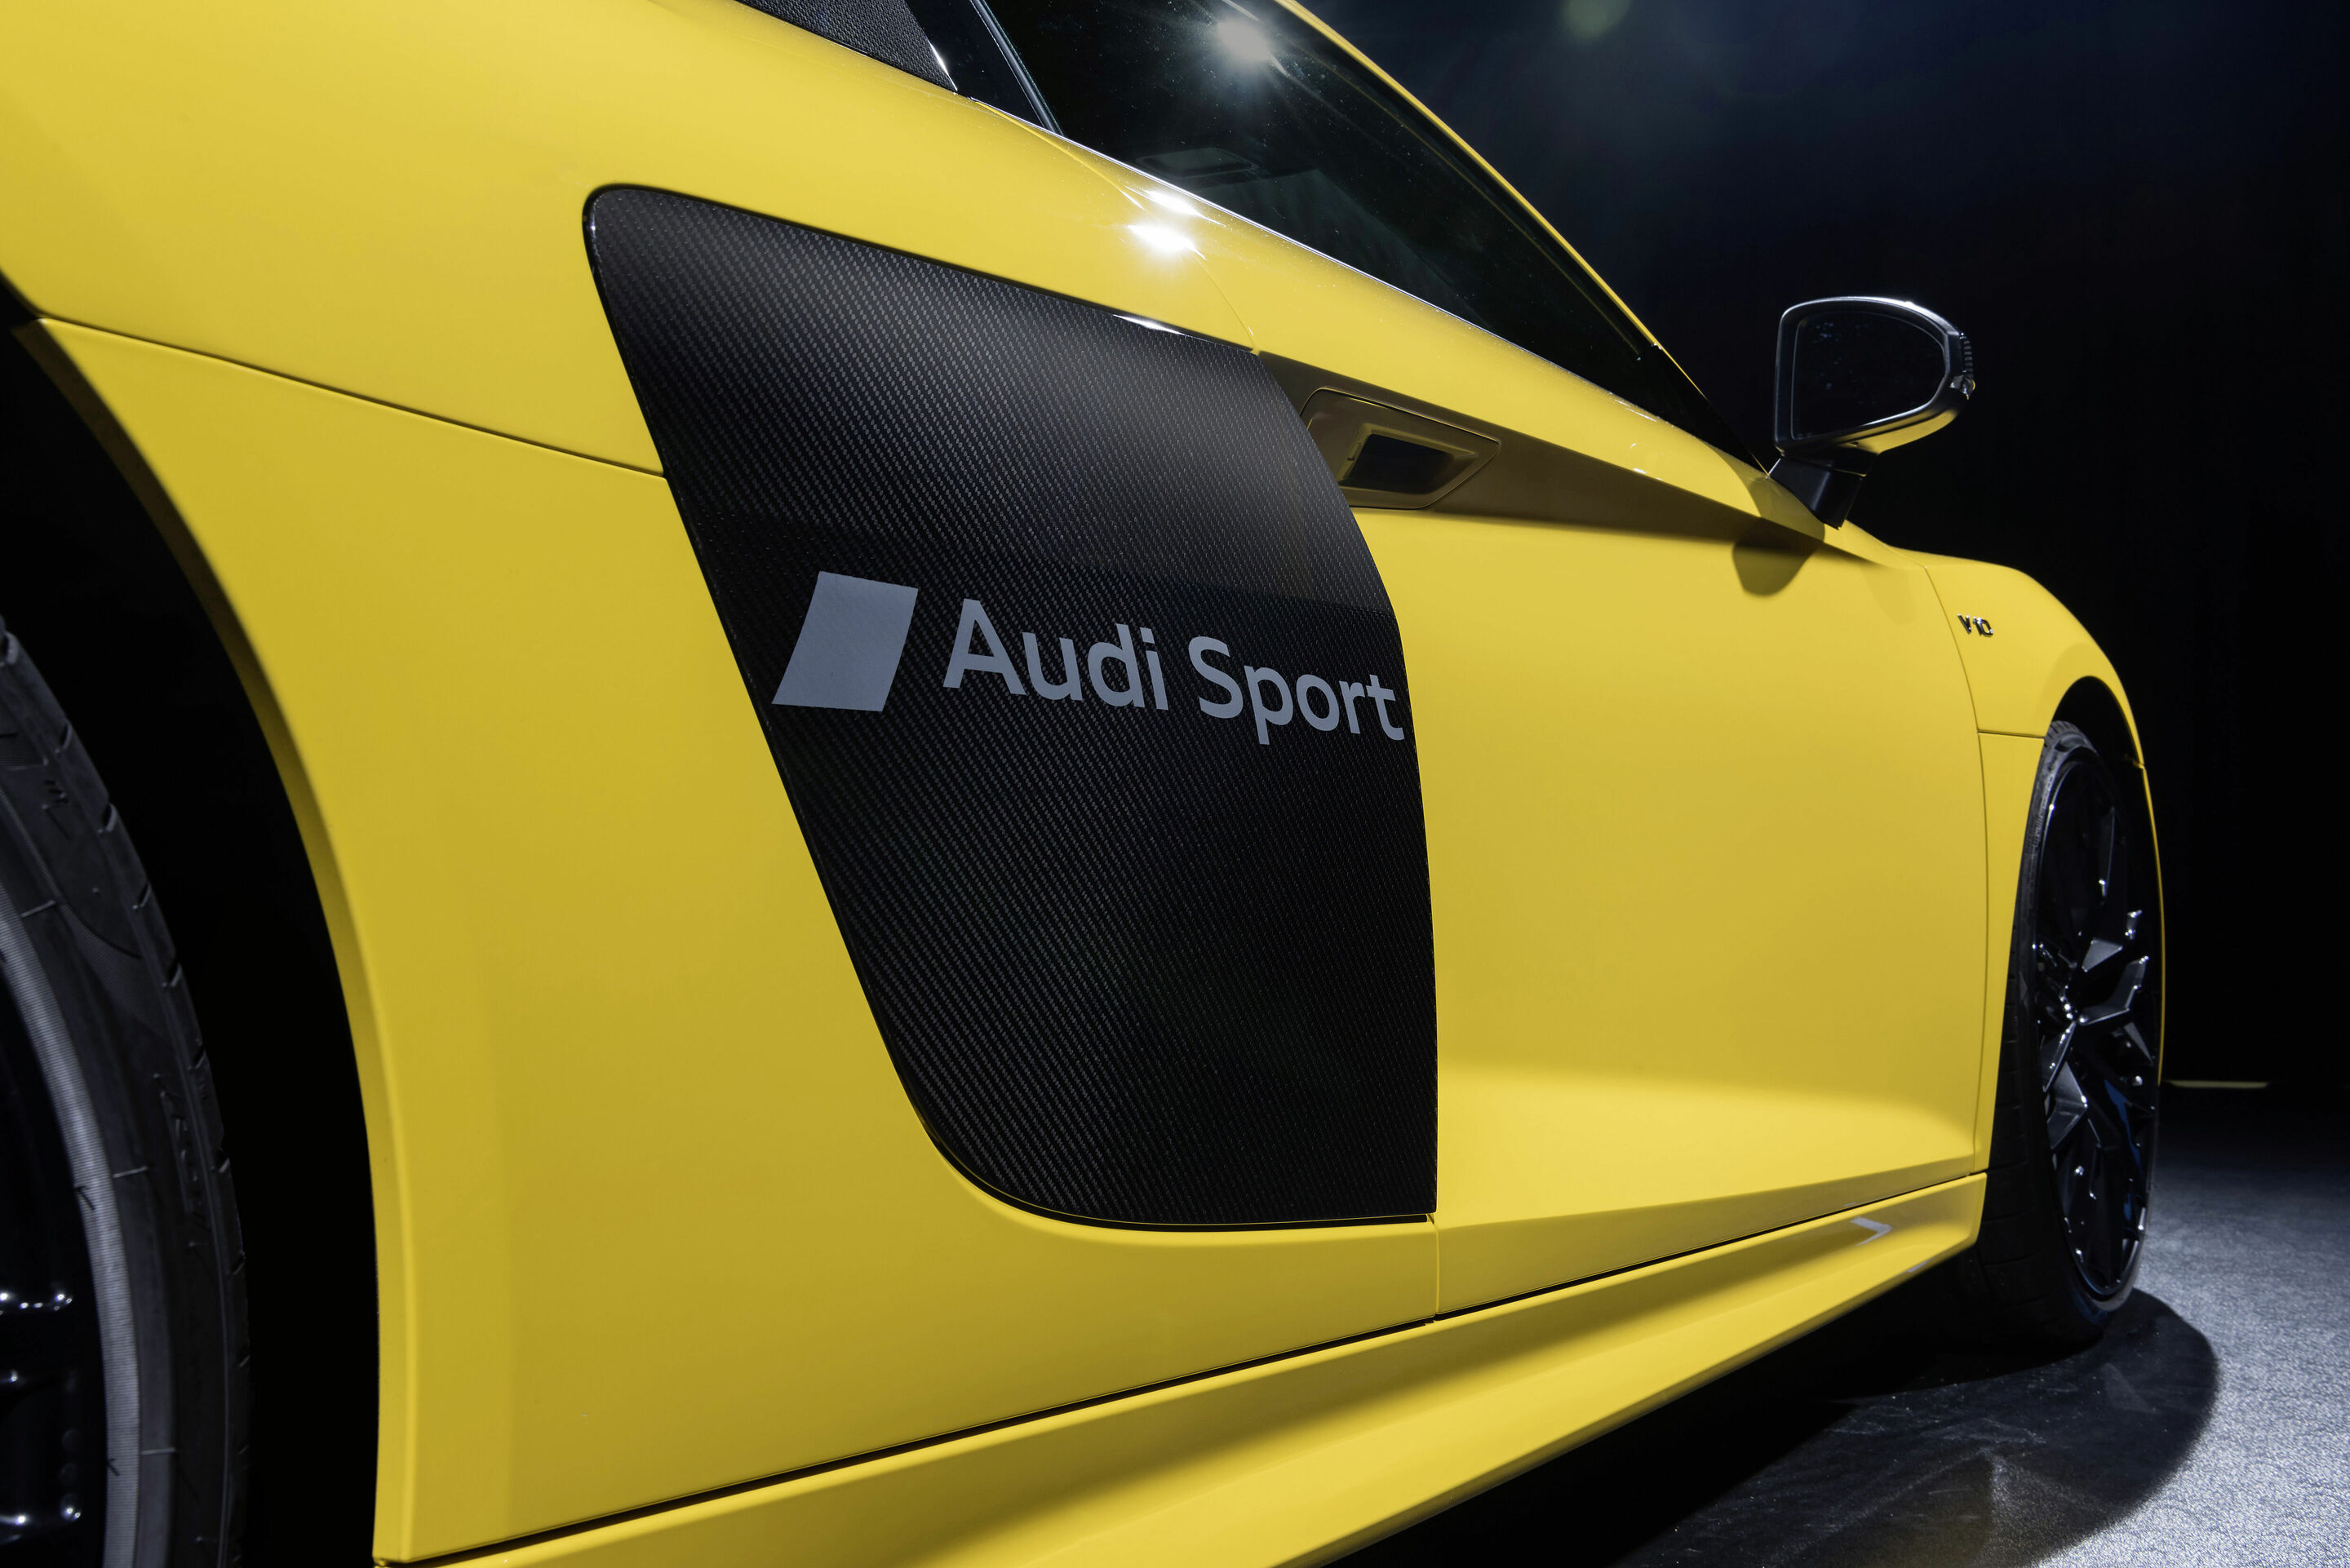 Audi prägt Symbole in den Autolack